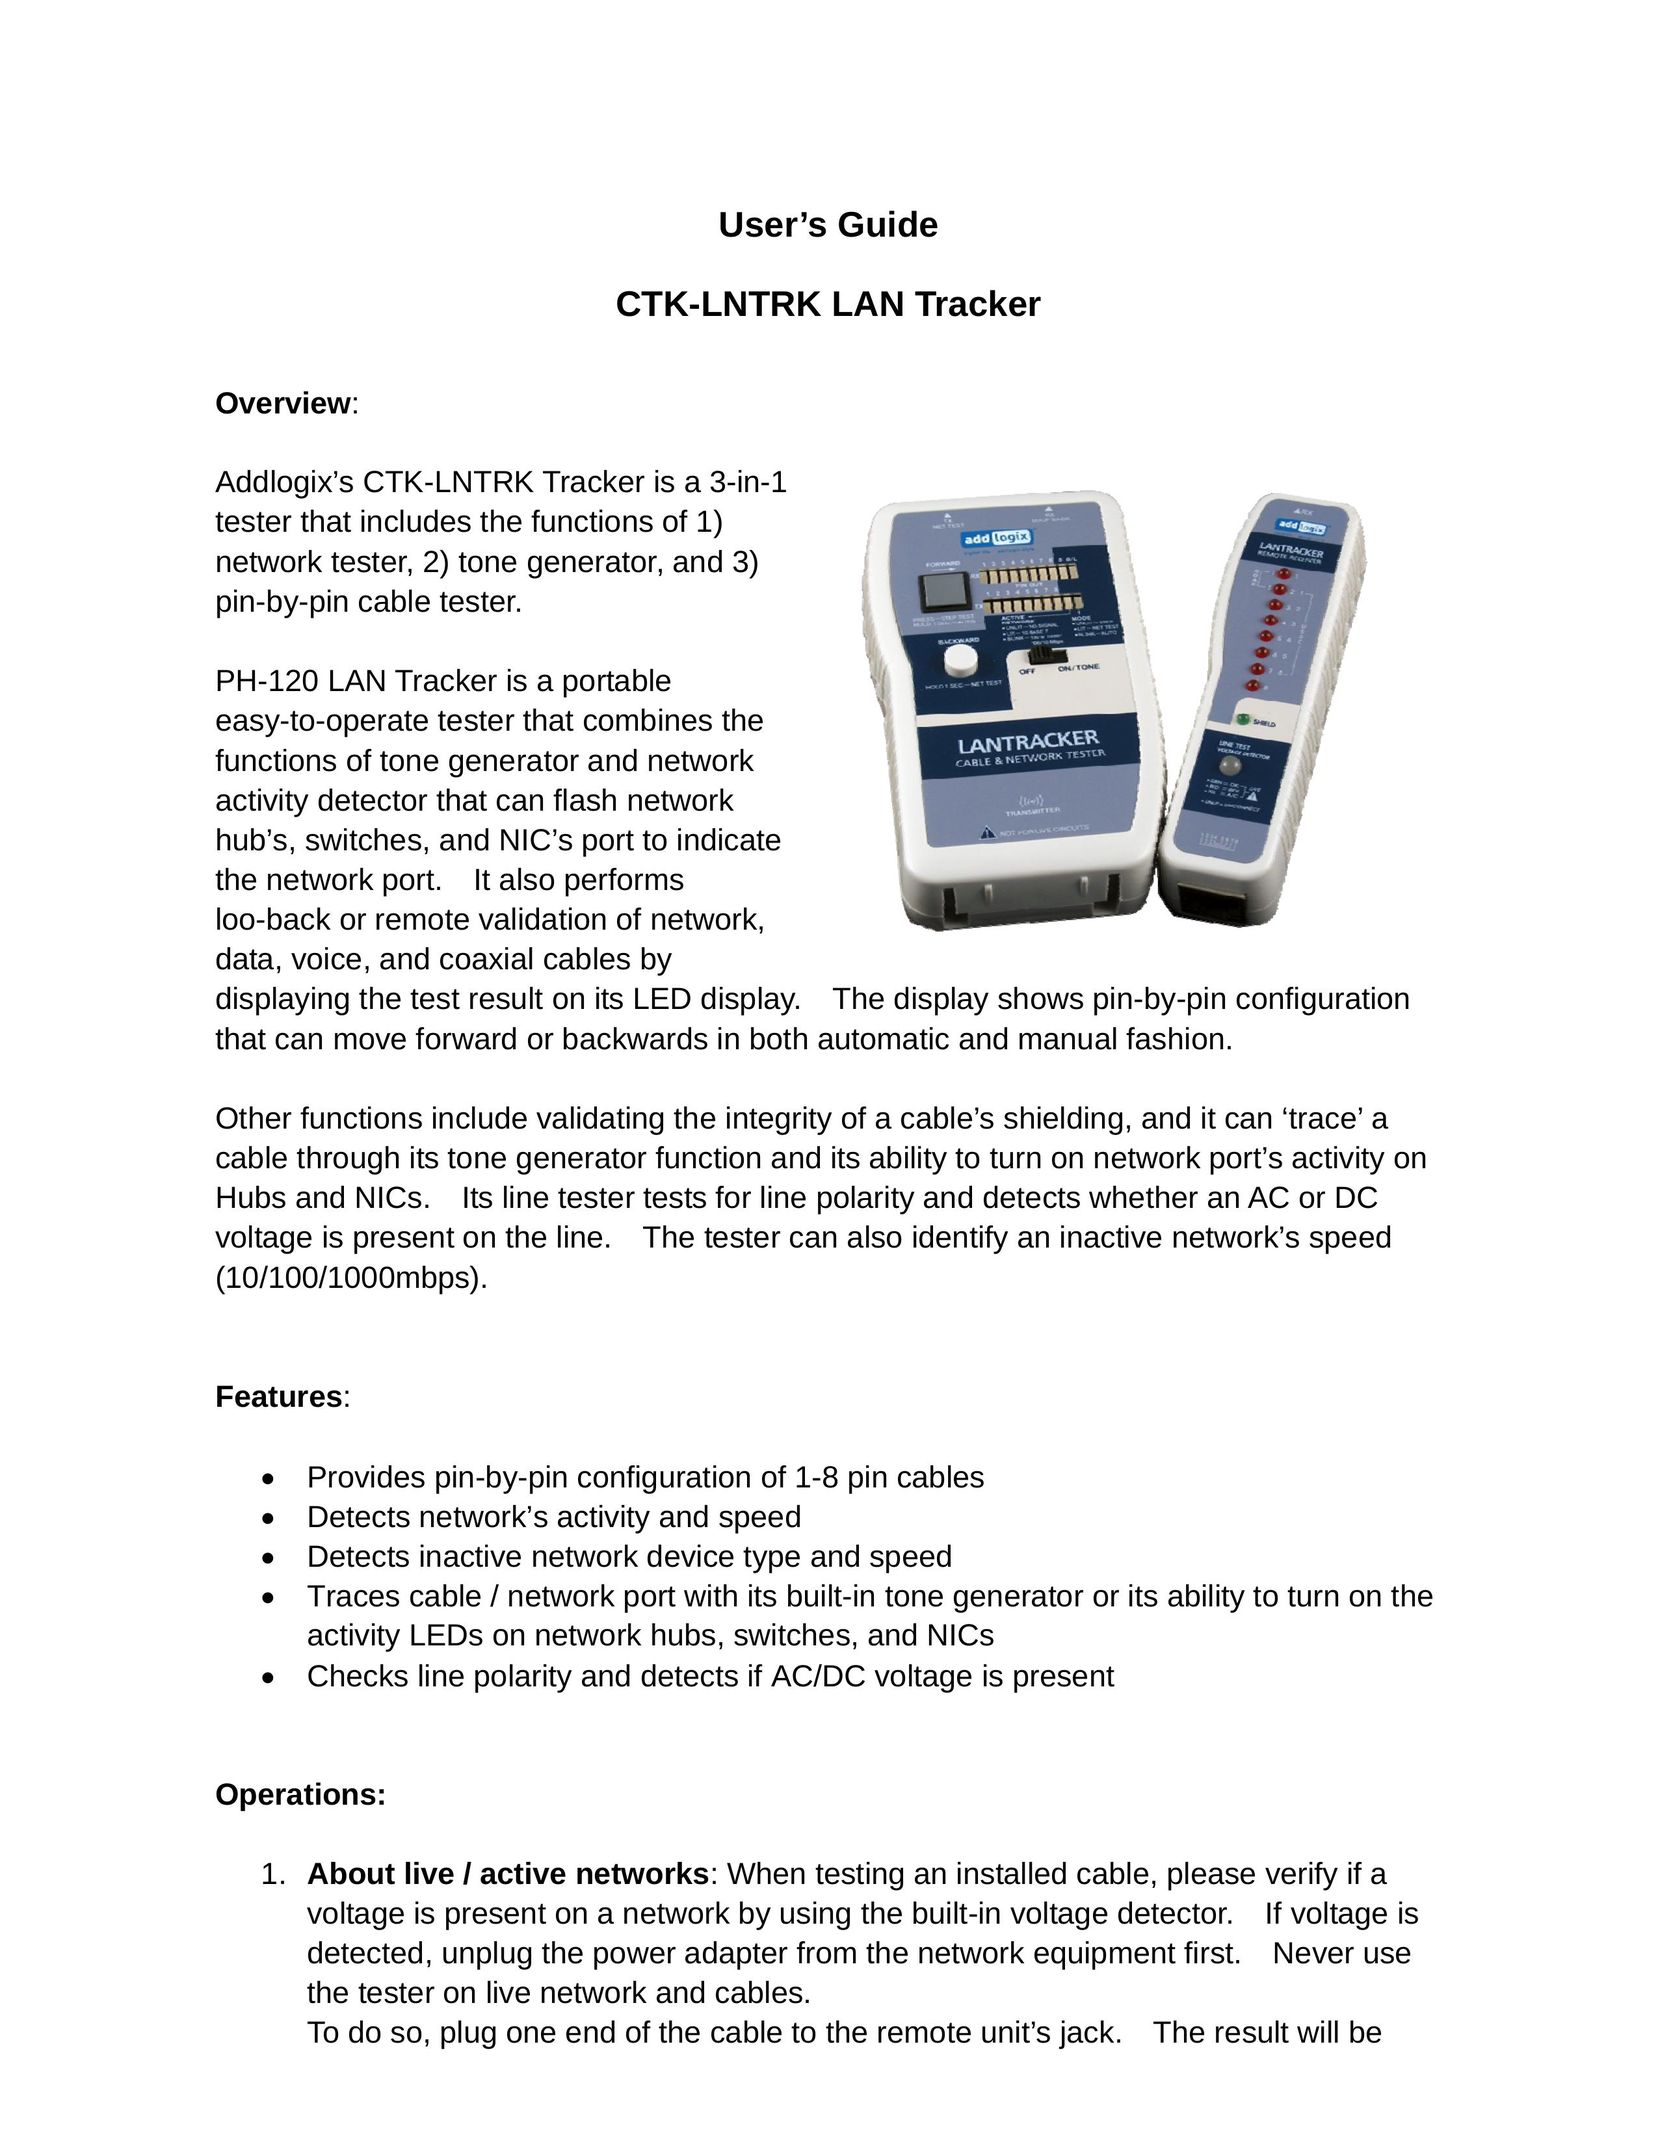 Addlogix CTK-LNTRK Network Hardware User Manual (Page 1)